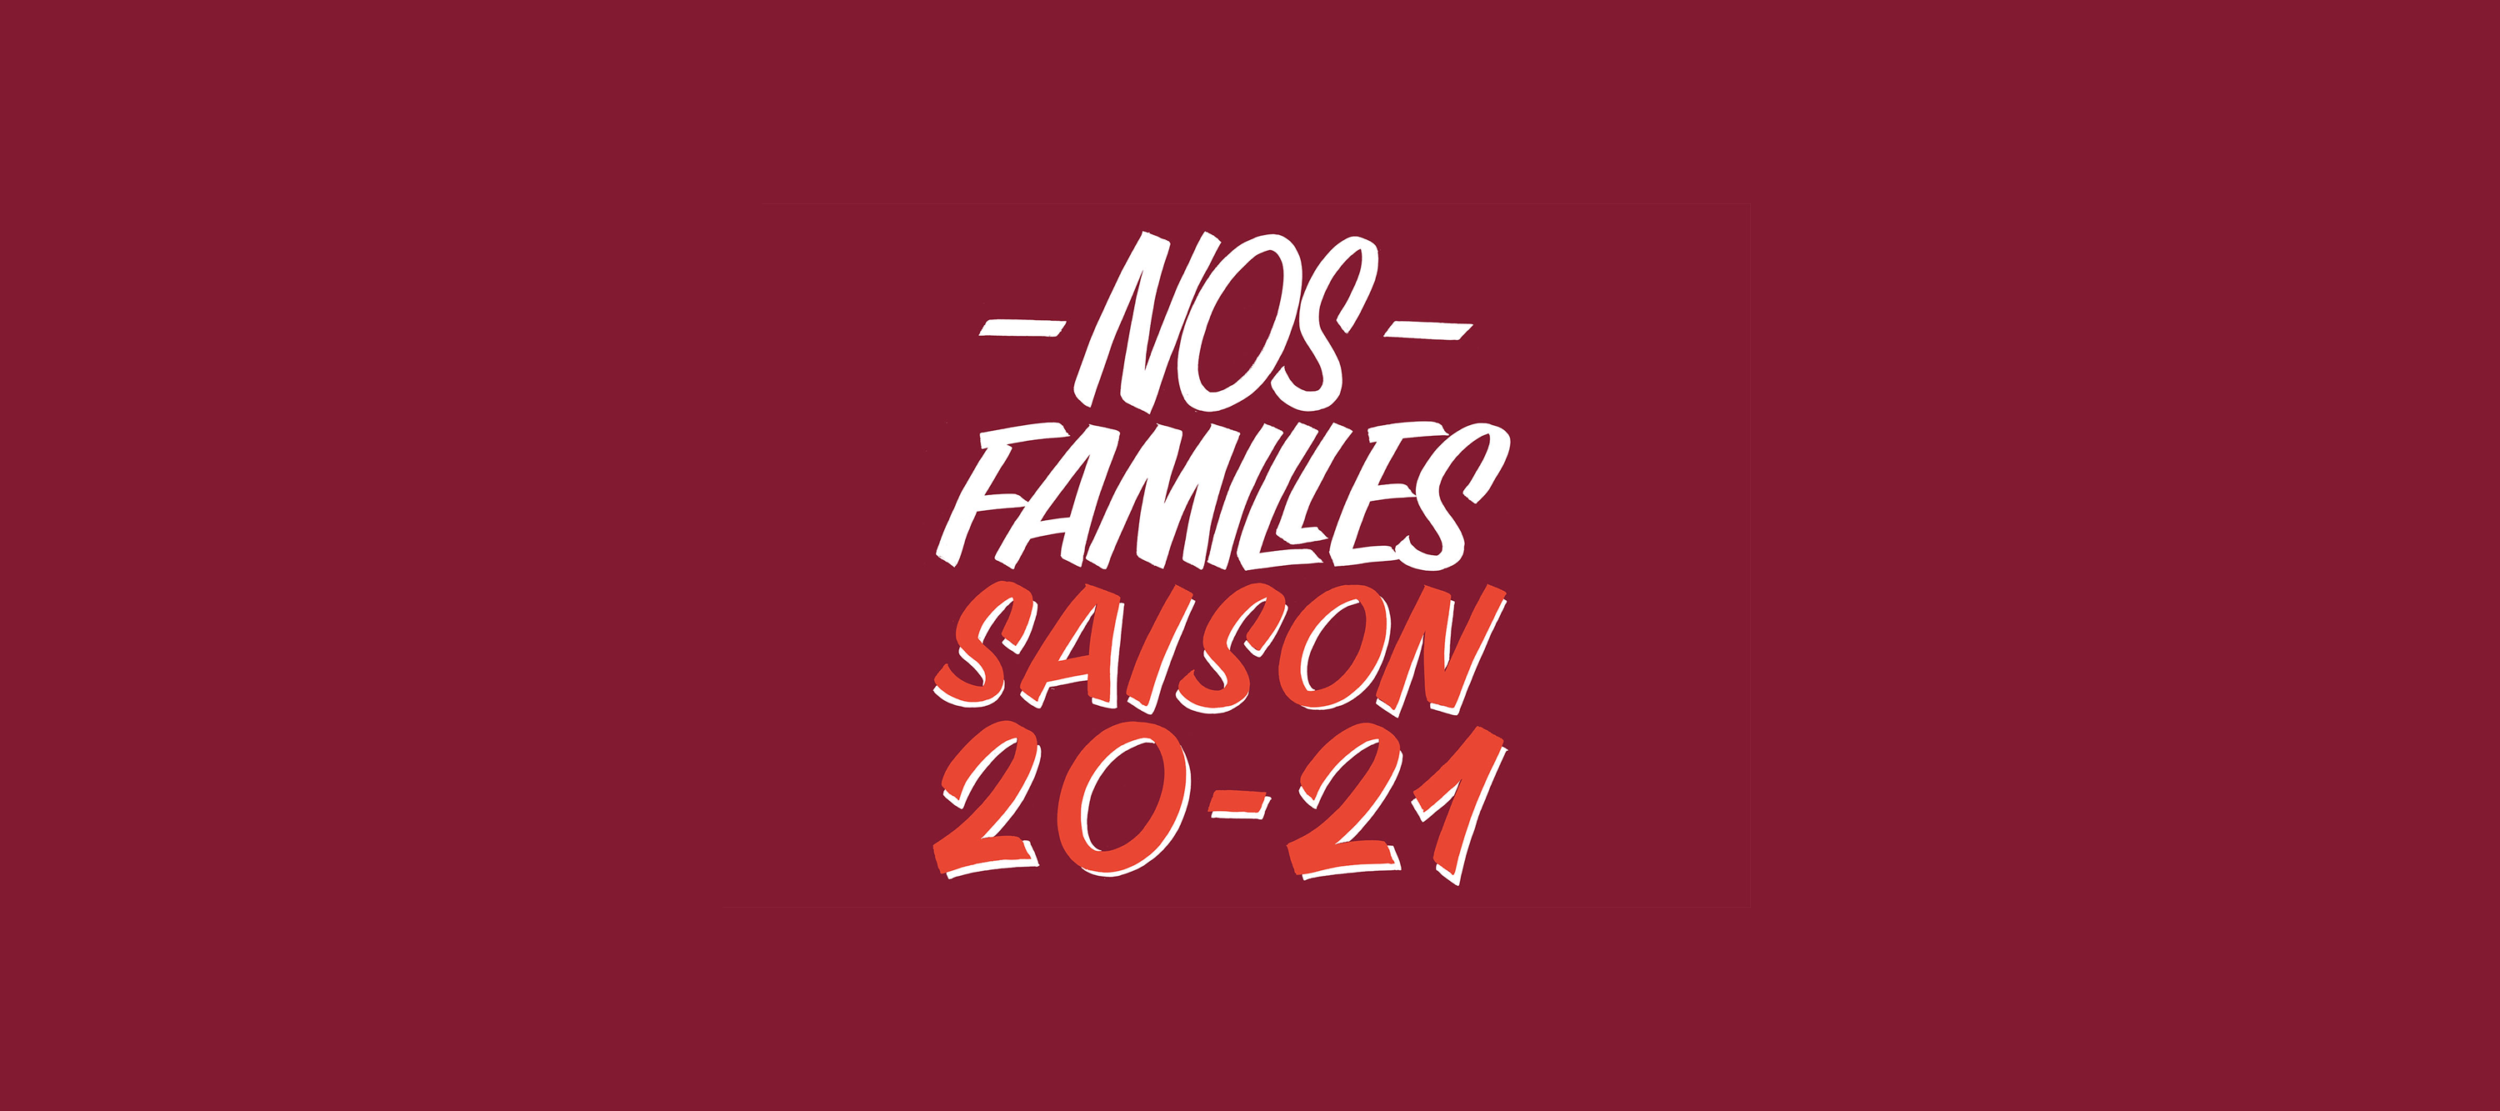 saison20-21 Nos familles -large